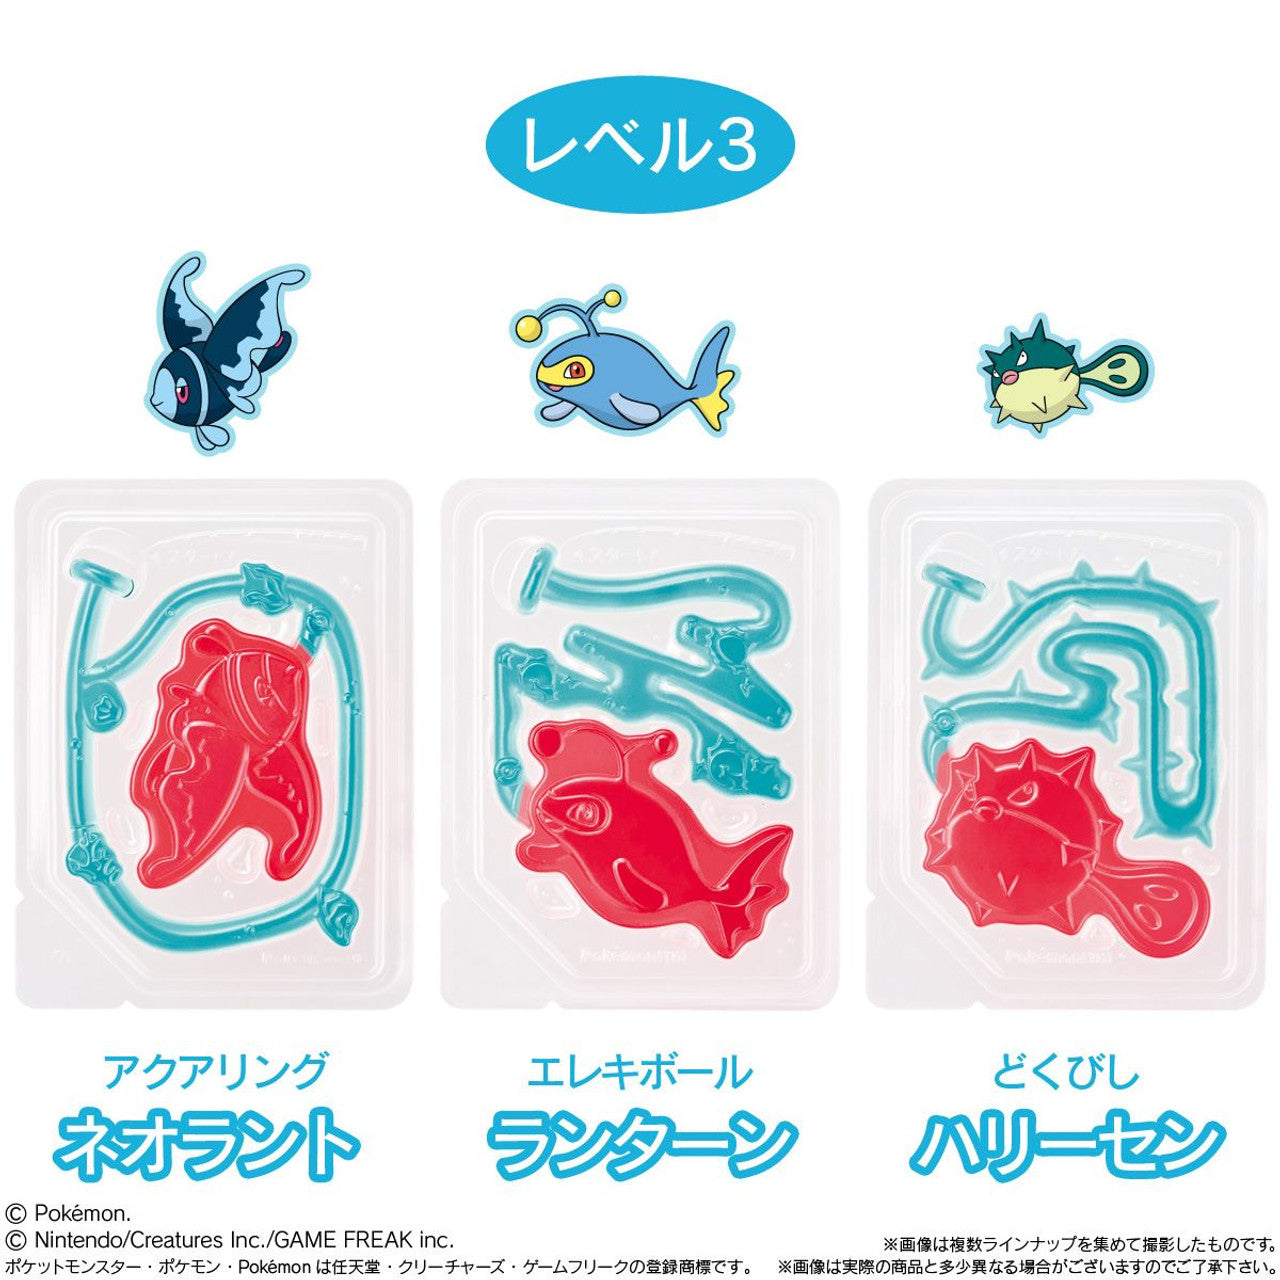 Bandai Candy - Pokemon Fishing Gummy